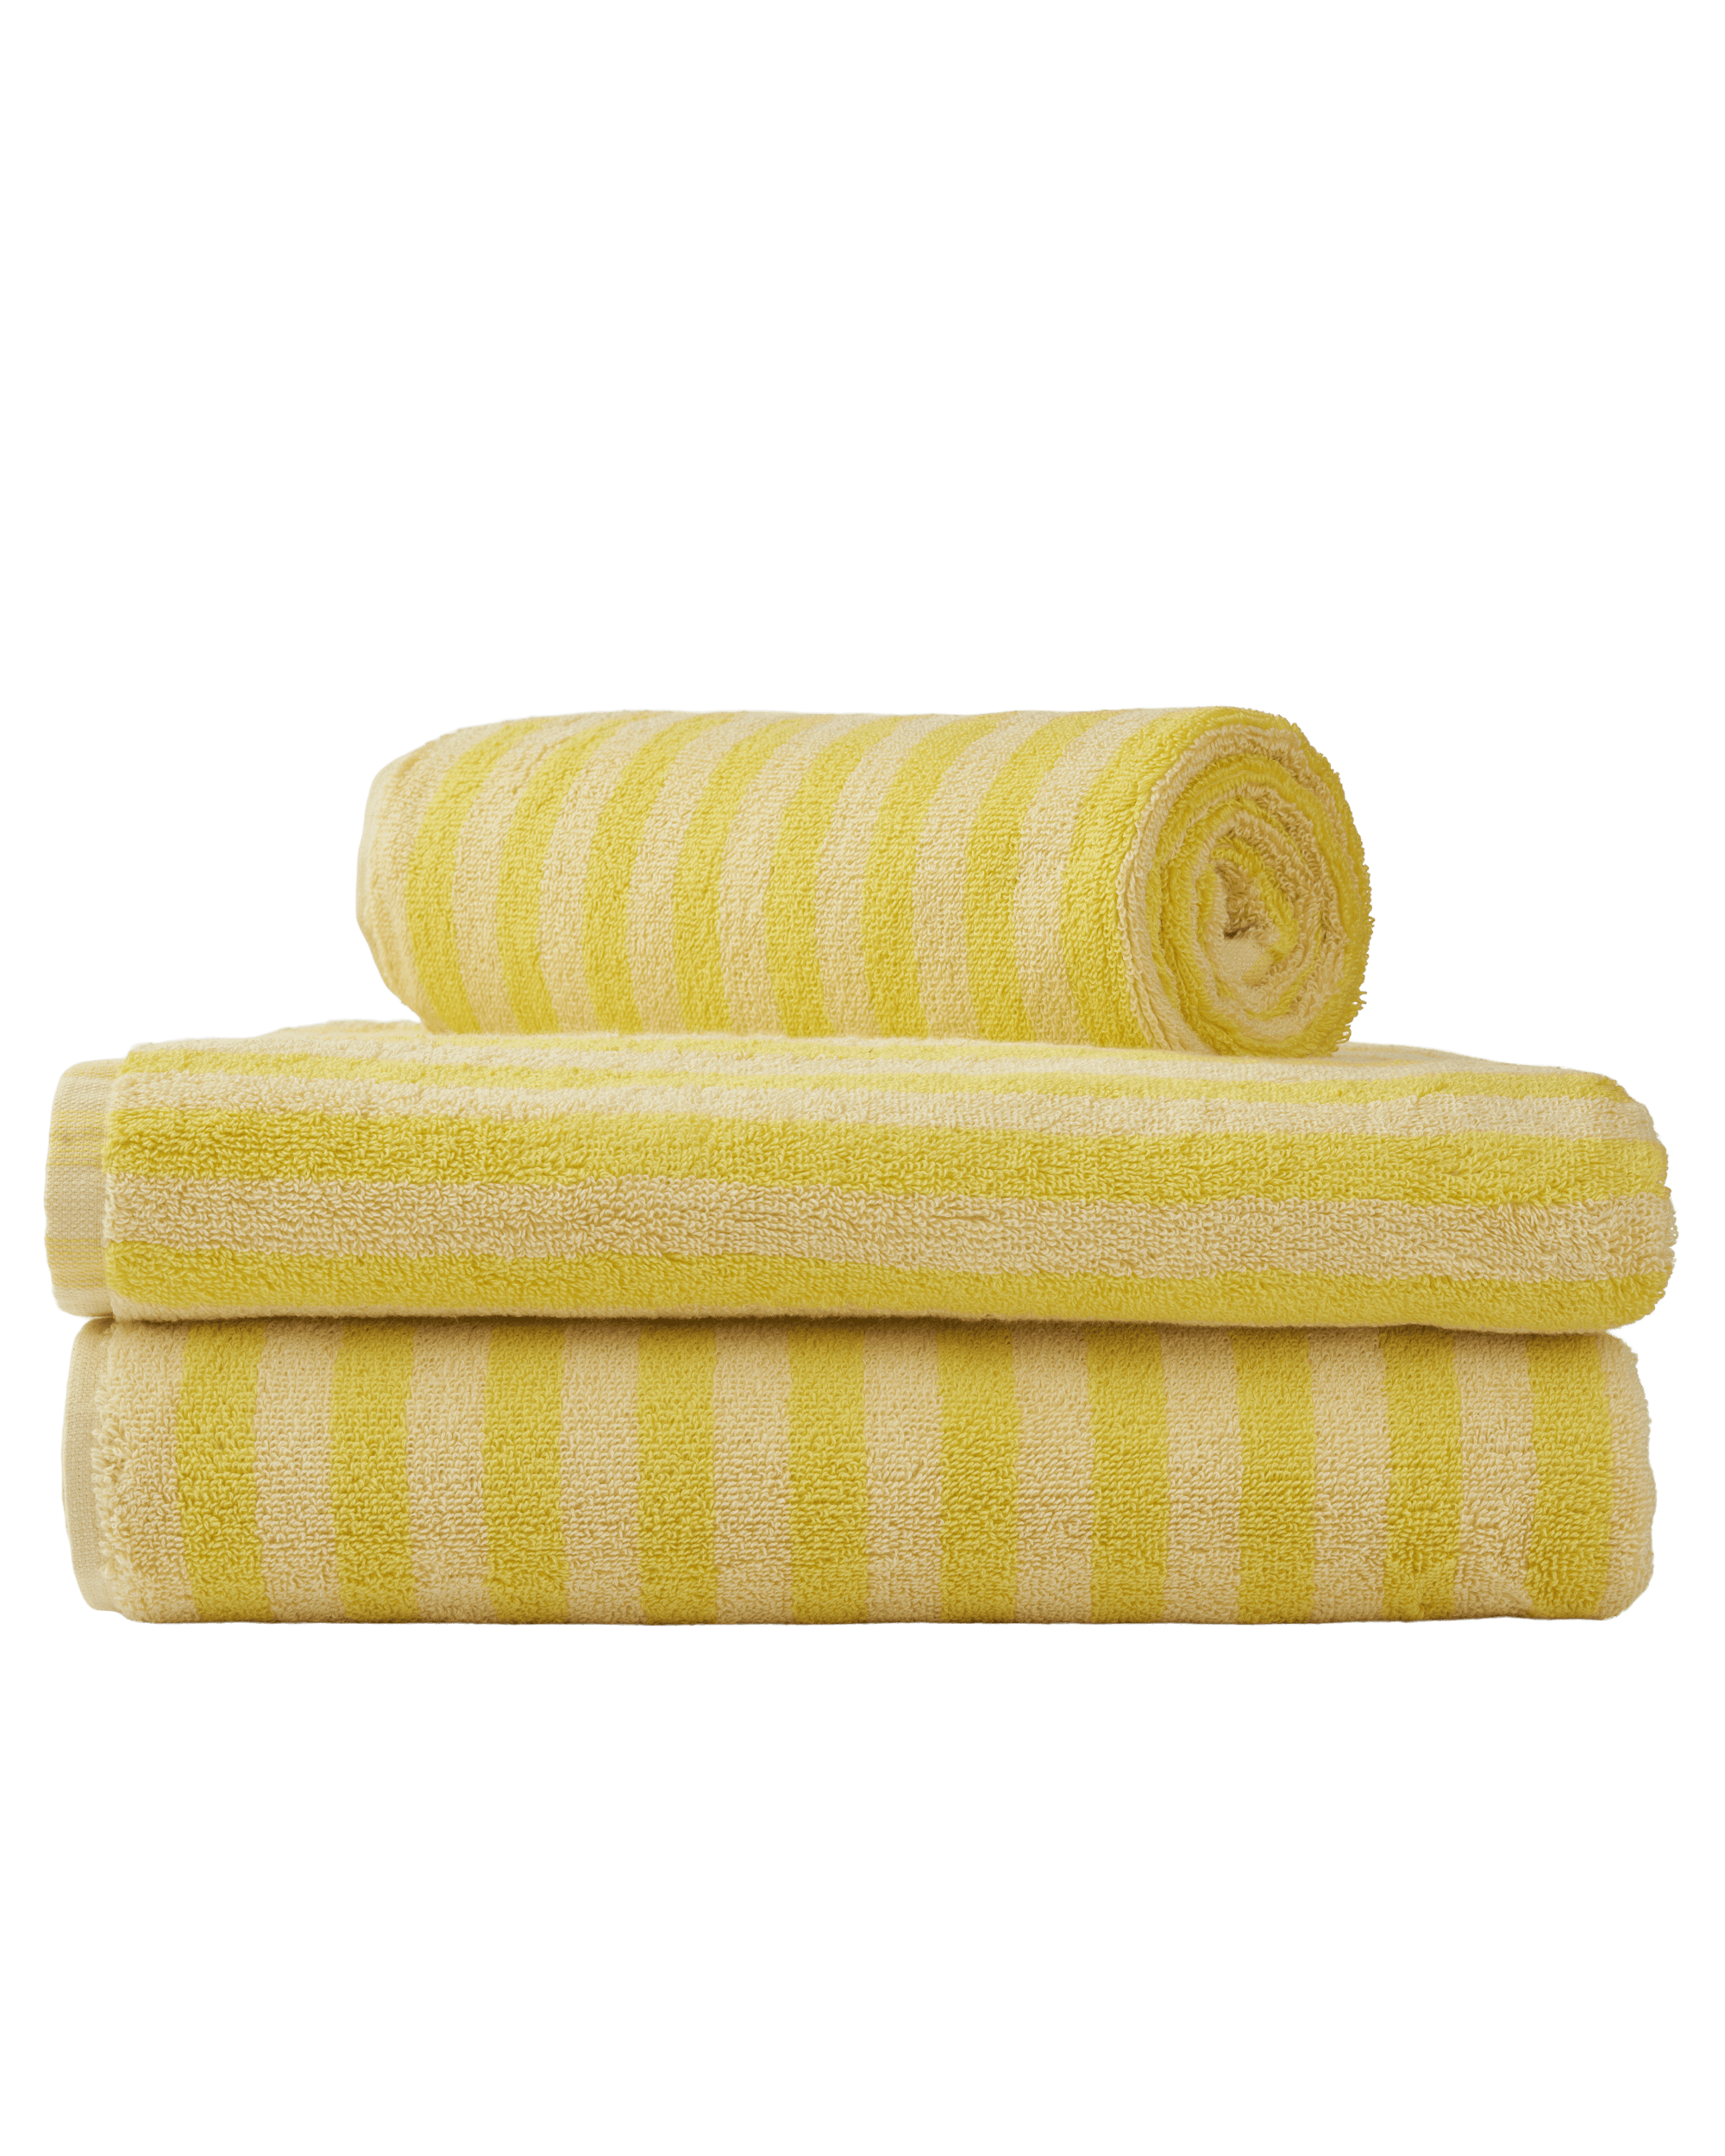 Bongusta yellow & Towels, Naram pristine – neon